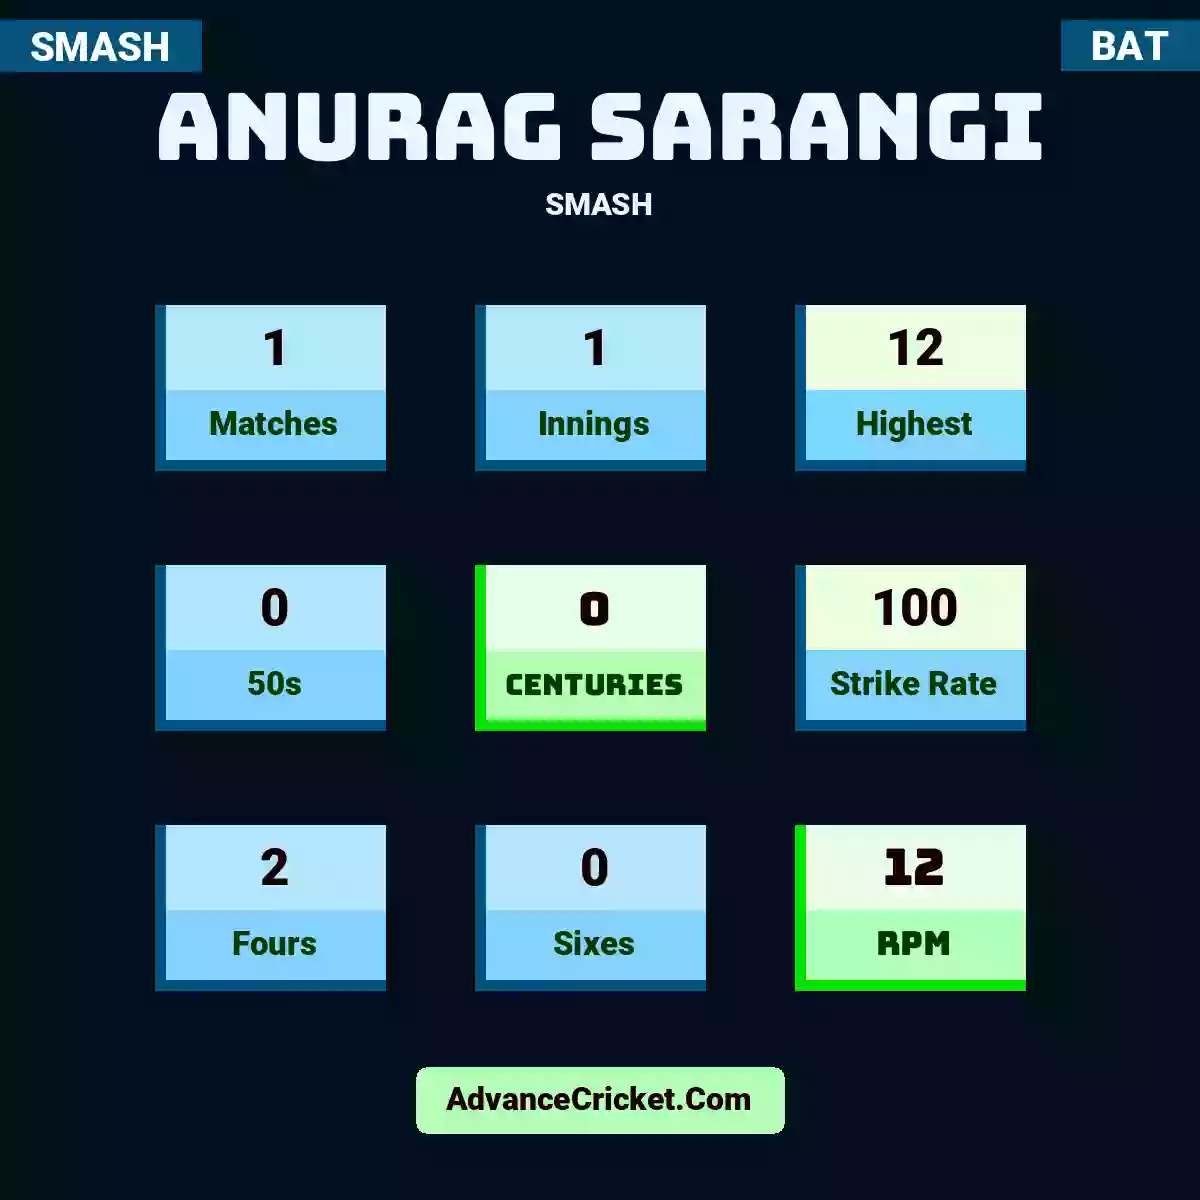 Anurag Sarangi SMASH , Anurag Sarangi played 1 matches, scored 12 runs as highest, 0 half-centuries, and 0 centuries, with a strike rate of 100. A.Sarangi hit 2 fours and 0 sixes, with an RPM of 12.